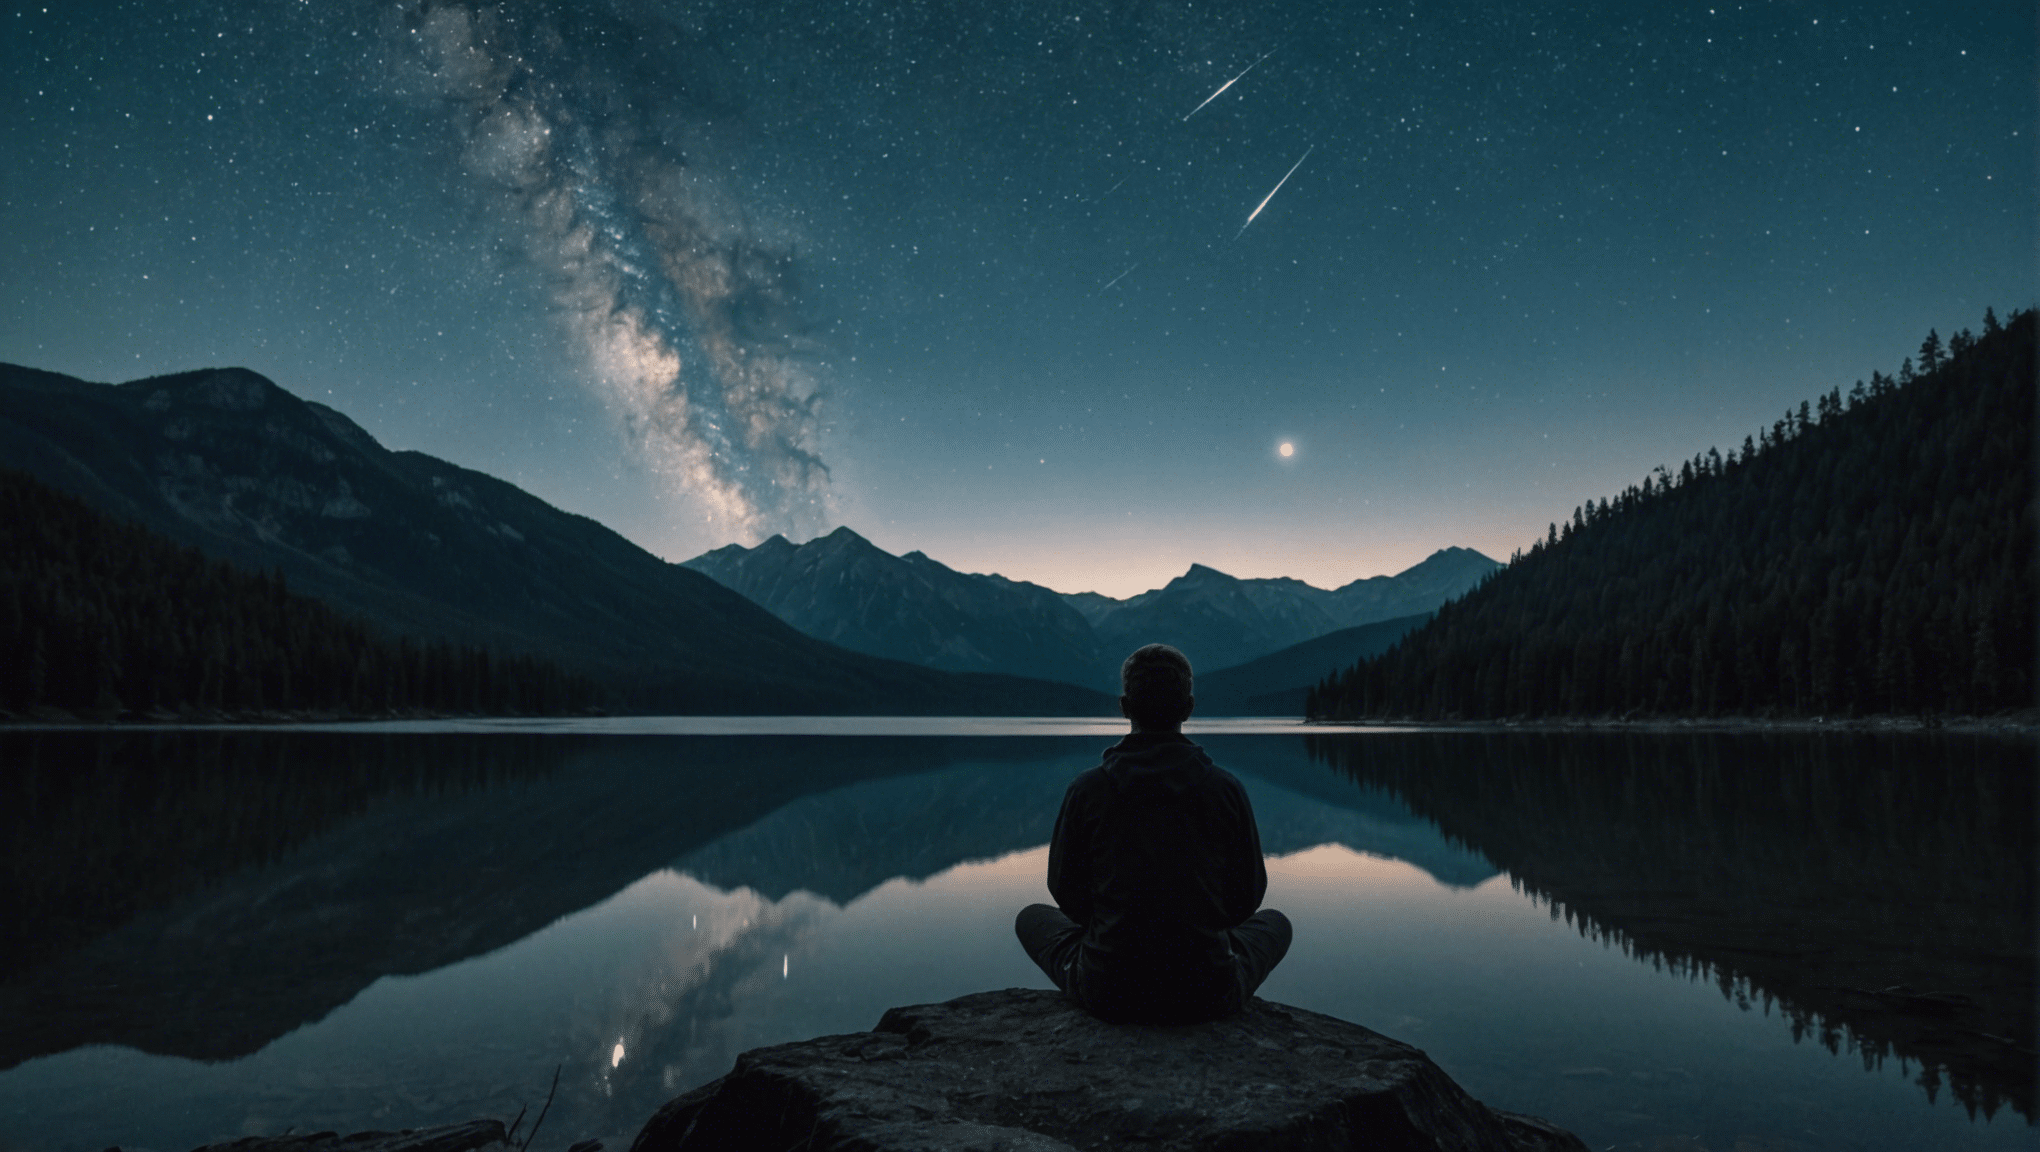 Contemplatieve figuur zoekt eenzaamheid onder een met sterren verlicht berglandschap.